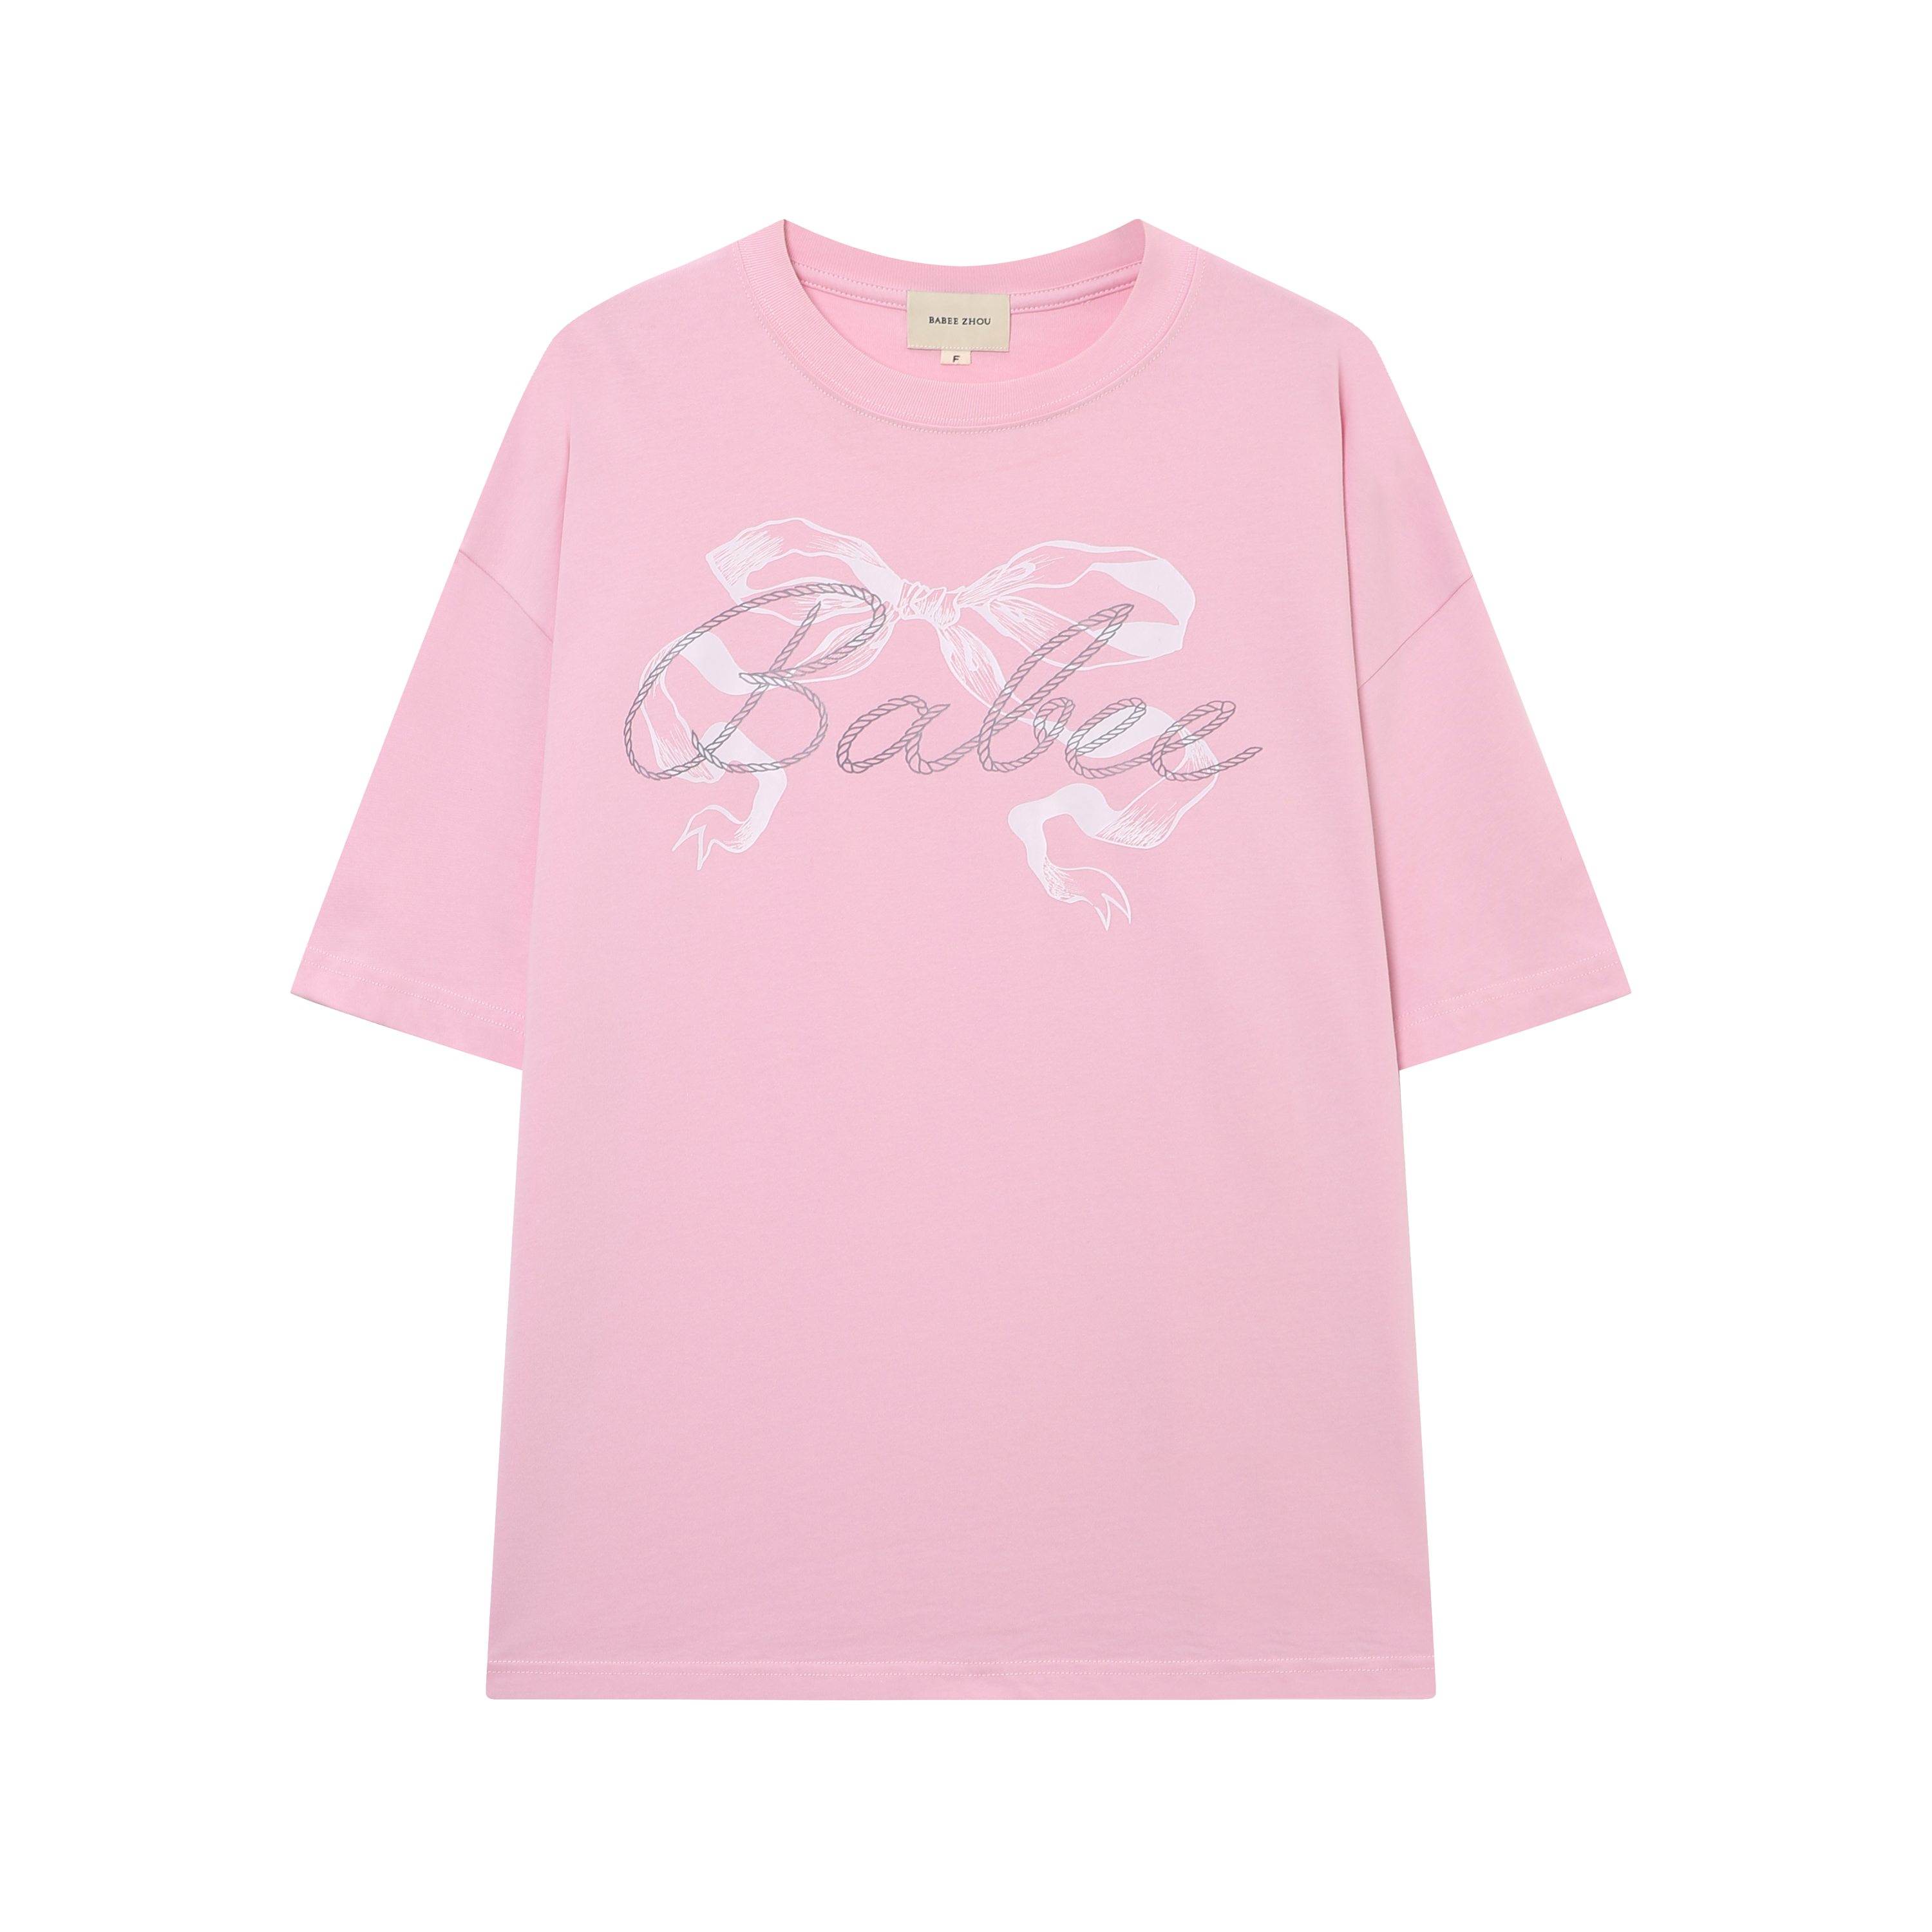 BABEE ZHOU 24夏季女装新款logo字母印花T恤粉色黑色